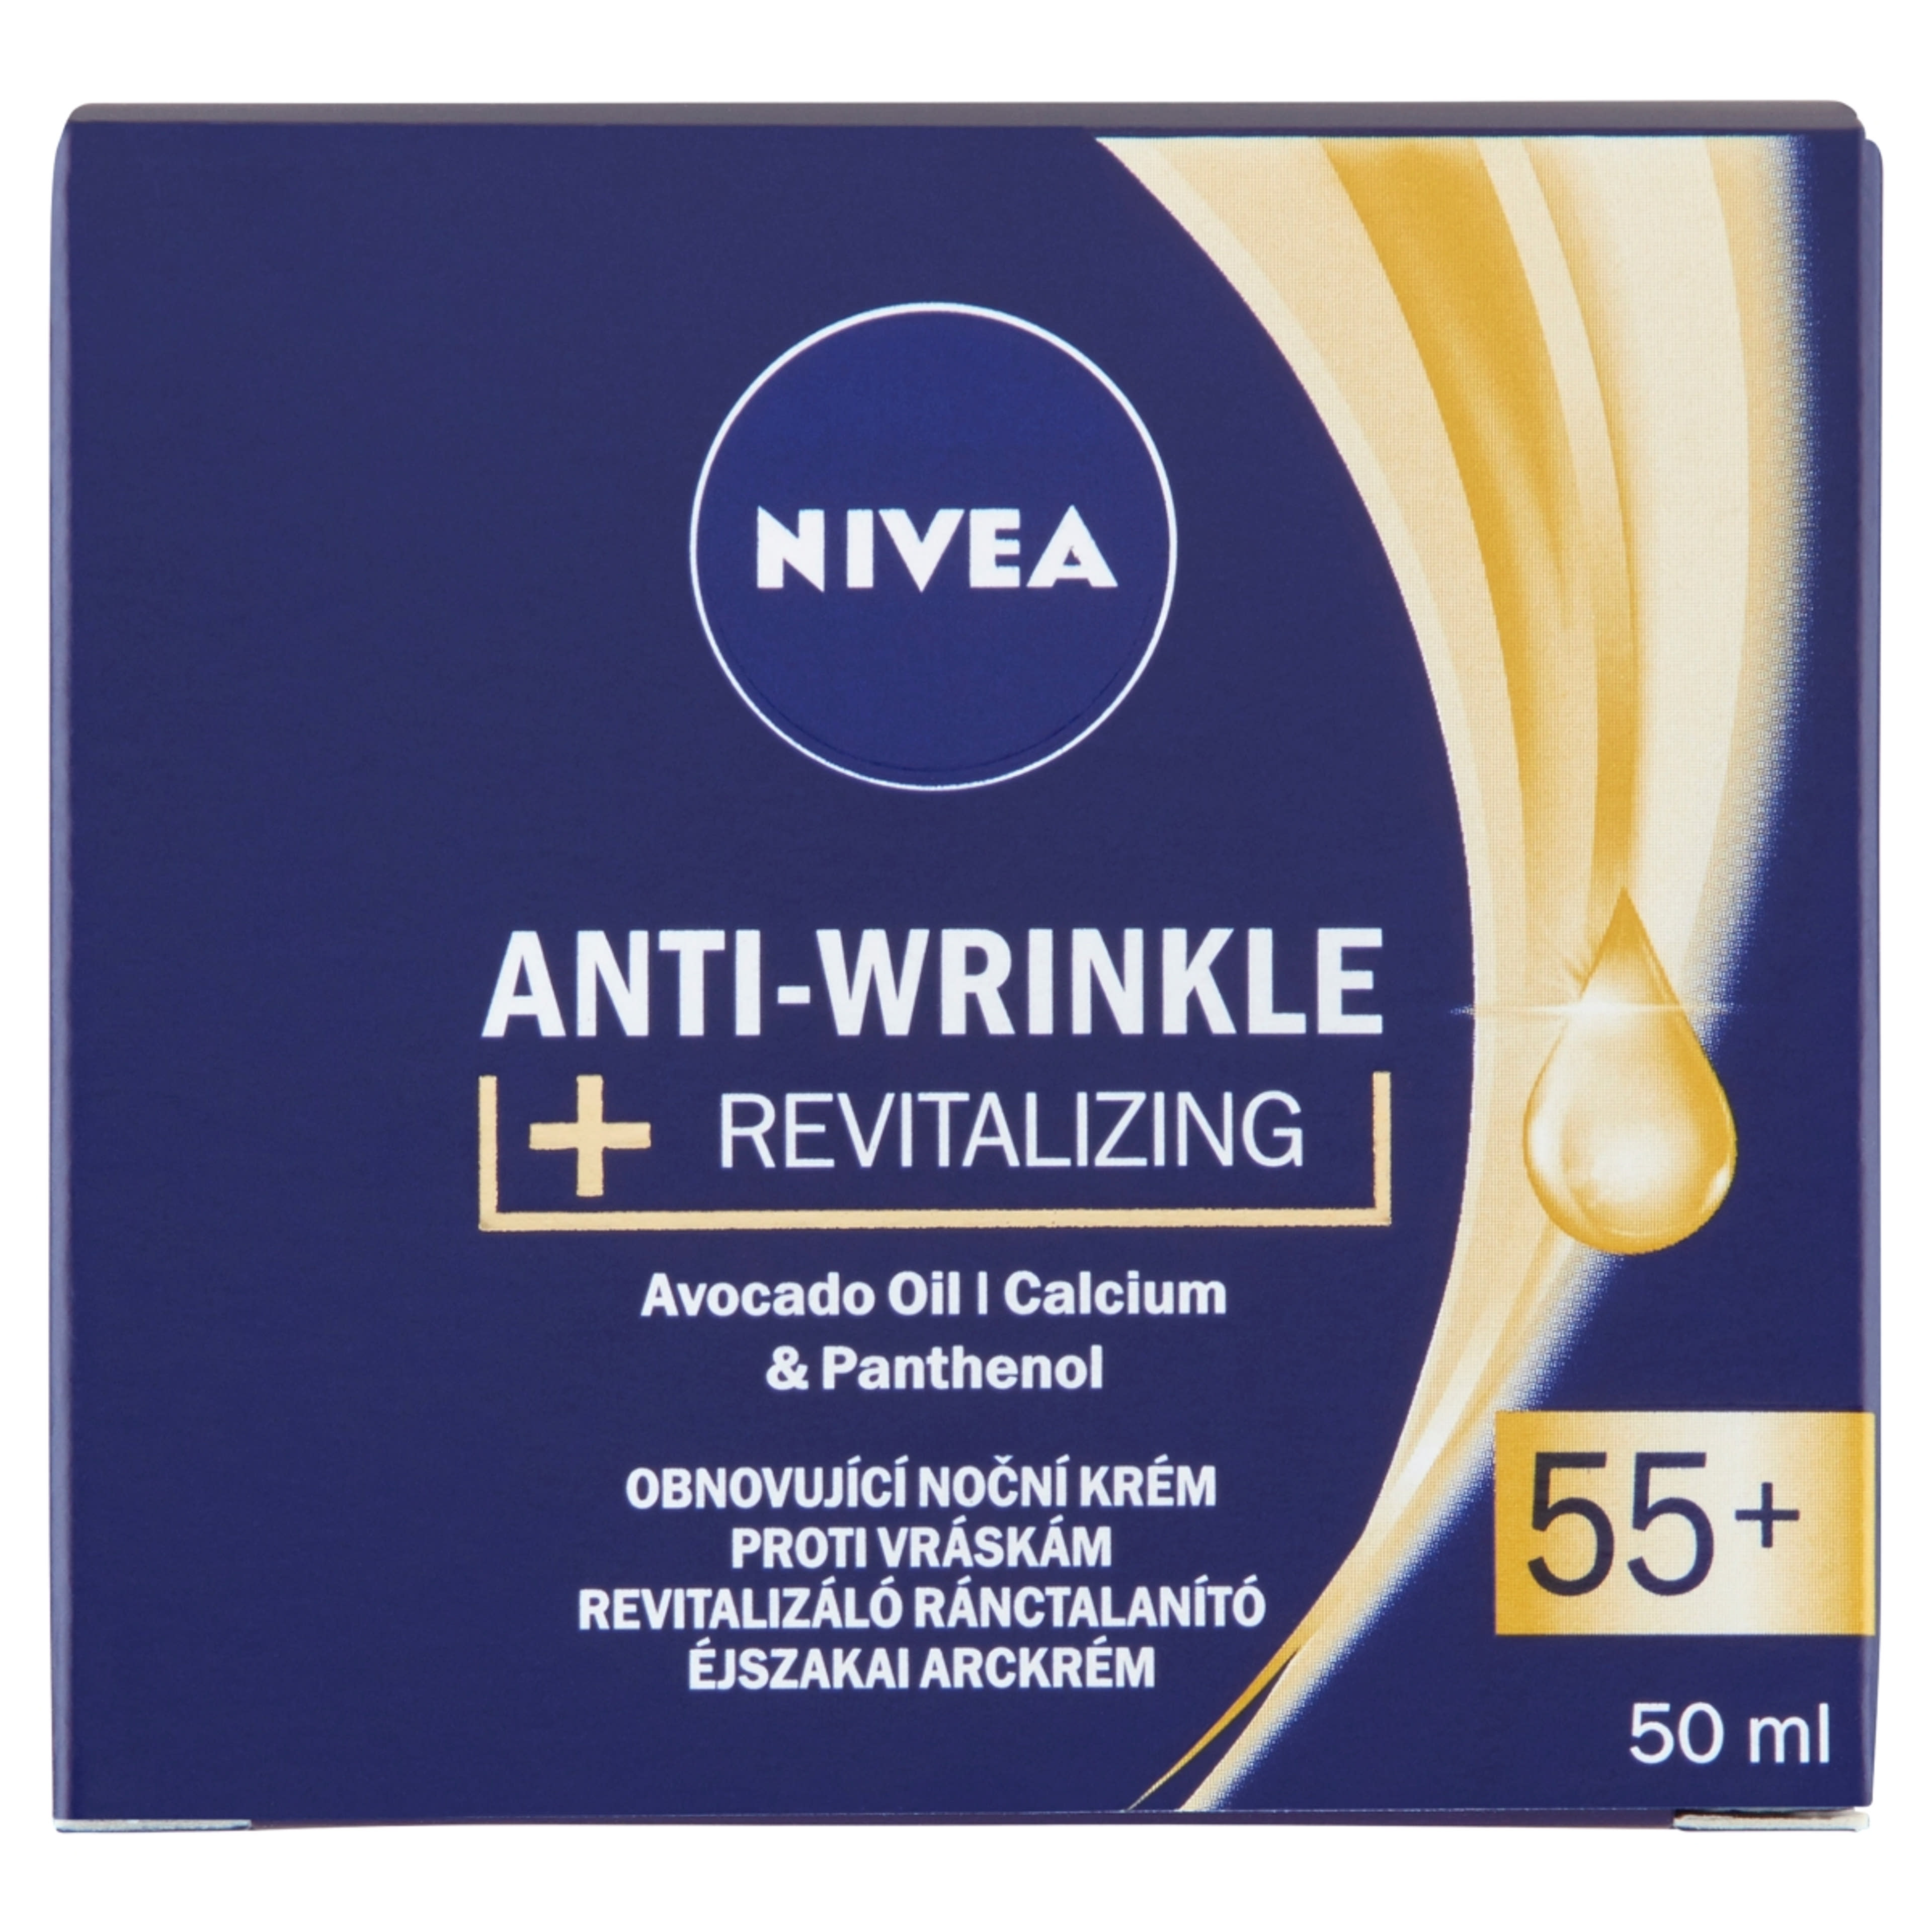 Nivea anti wrinkle 55+ éjszakai arckrém - 50 ml-1